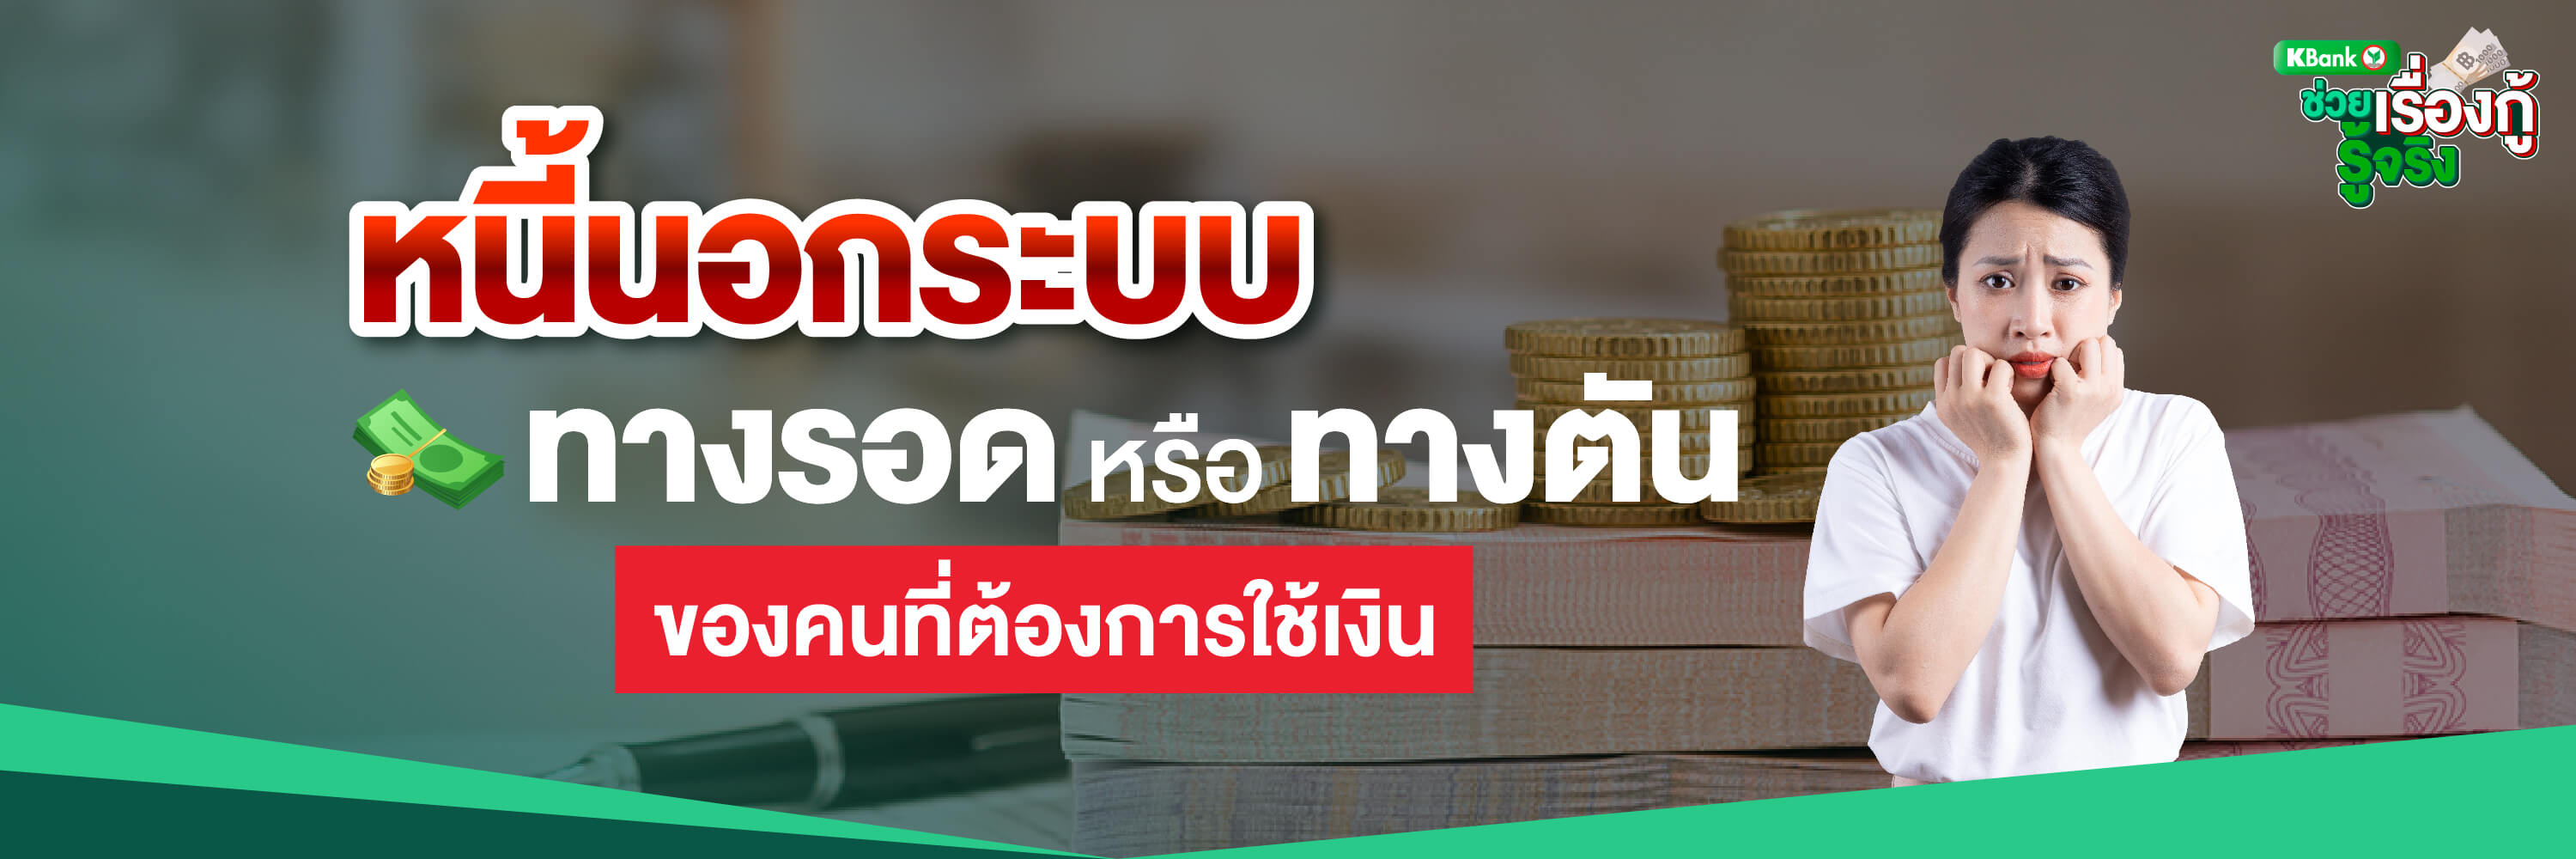 หนี้นอกระบบ “ทางรอด” หรือ “ทางตัน” ของคนที่ต้องการใช้เงิน - ธนาคารกสิกรไทย